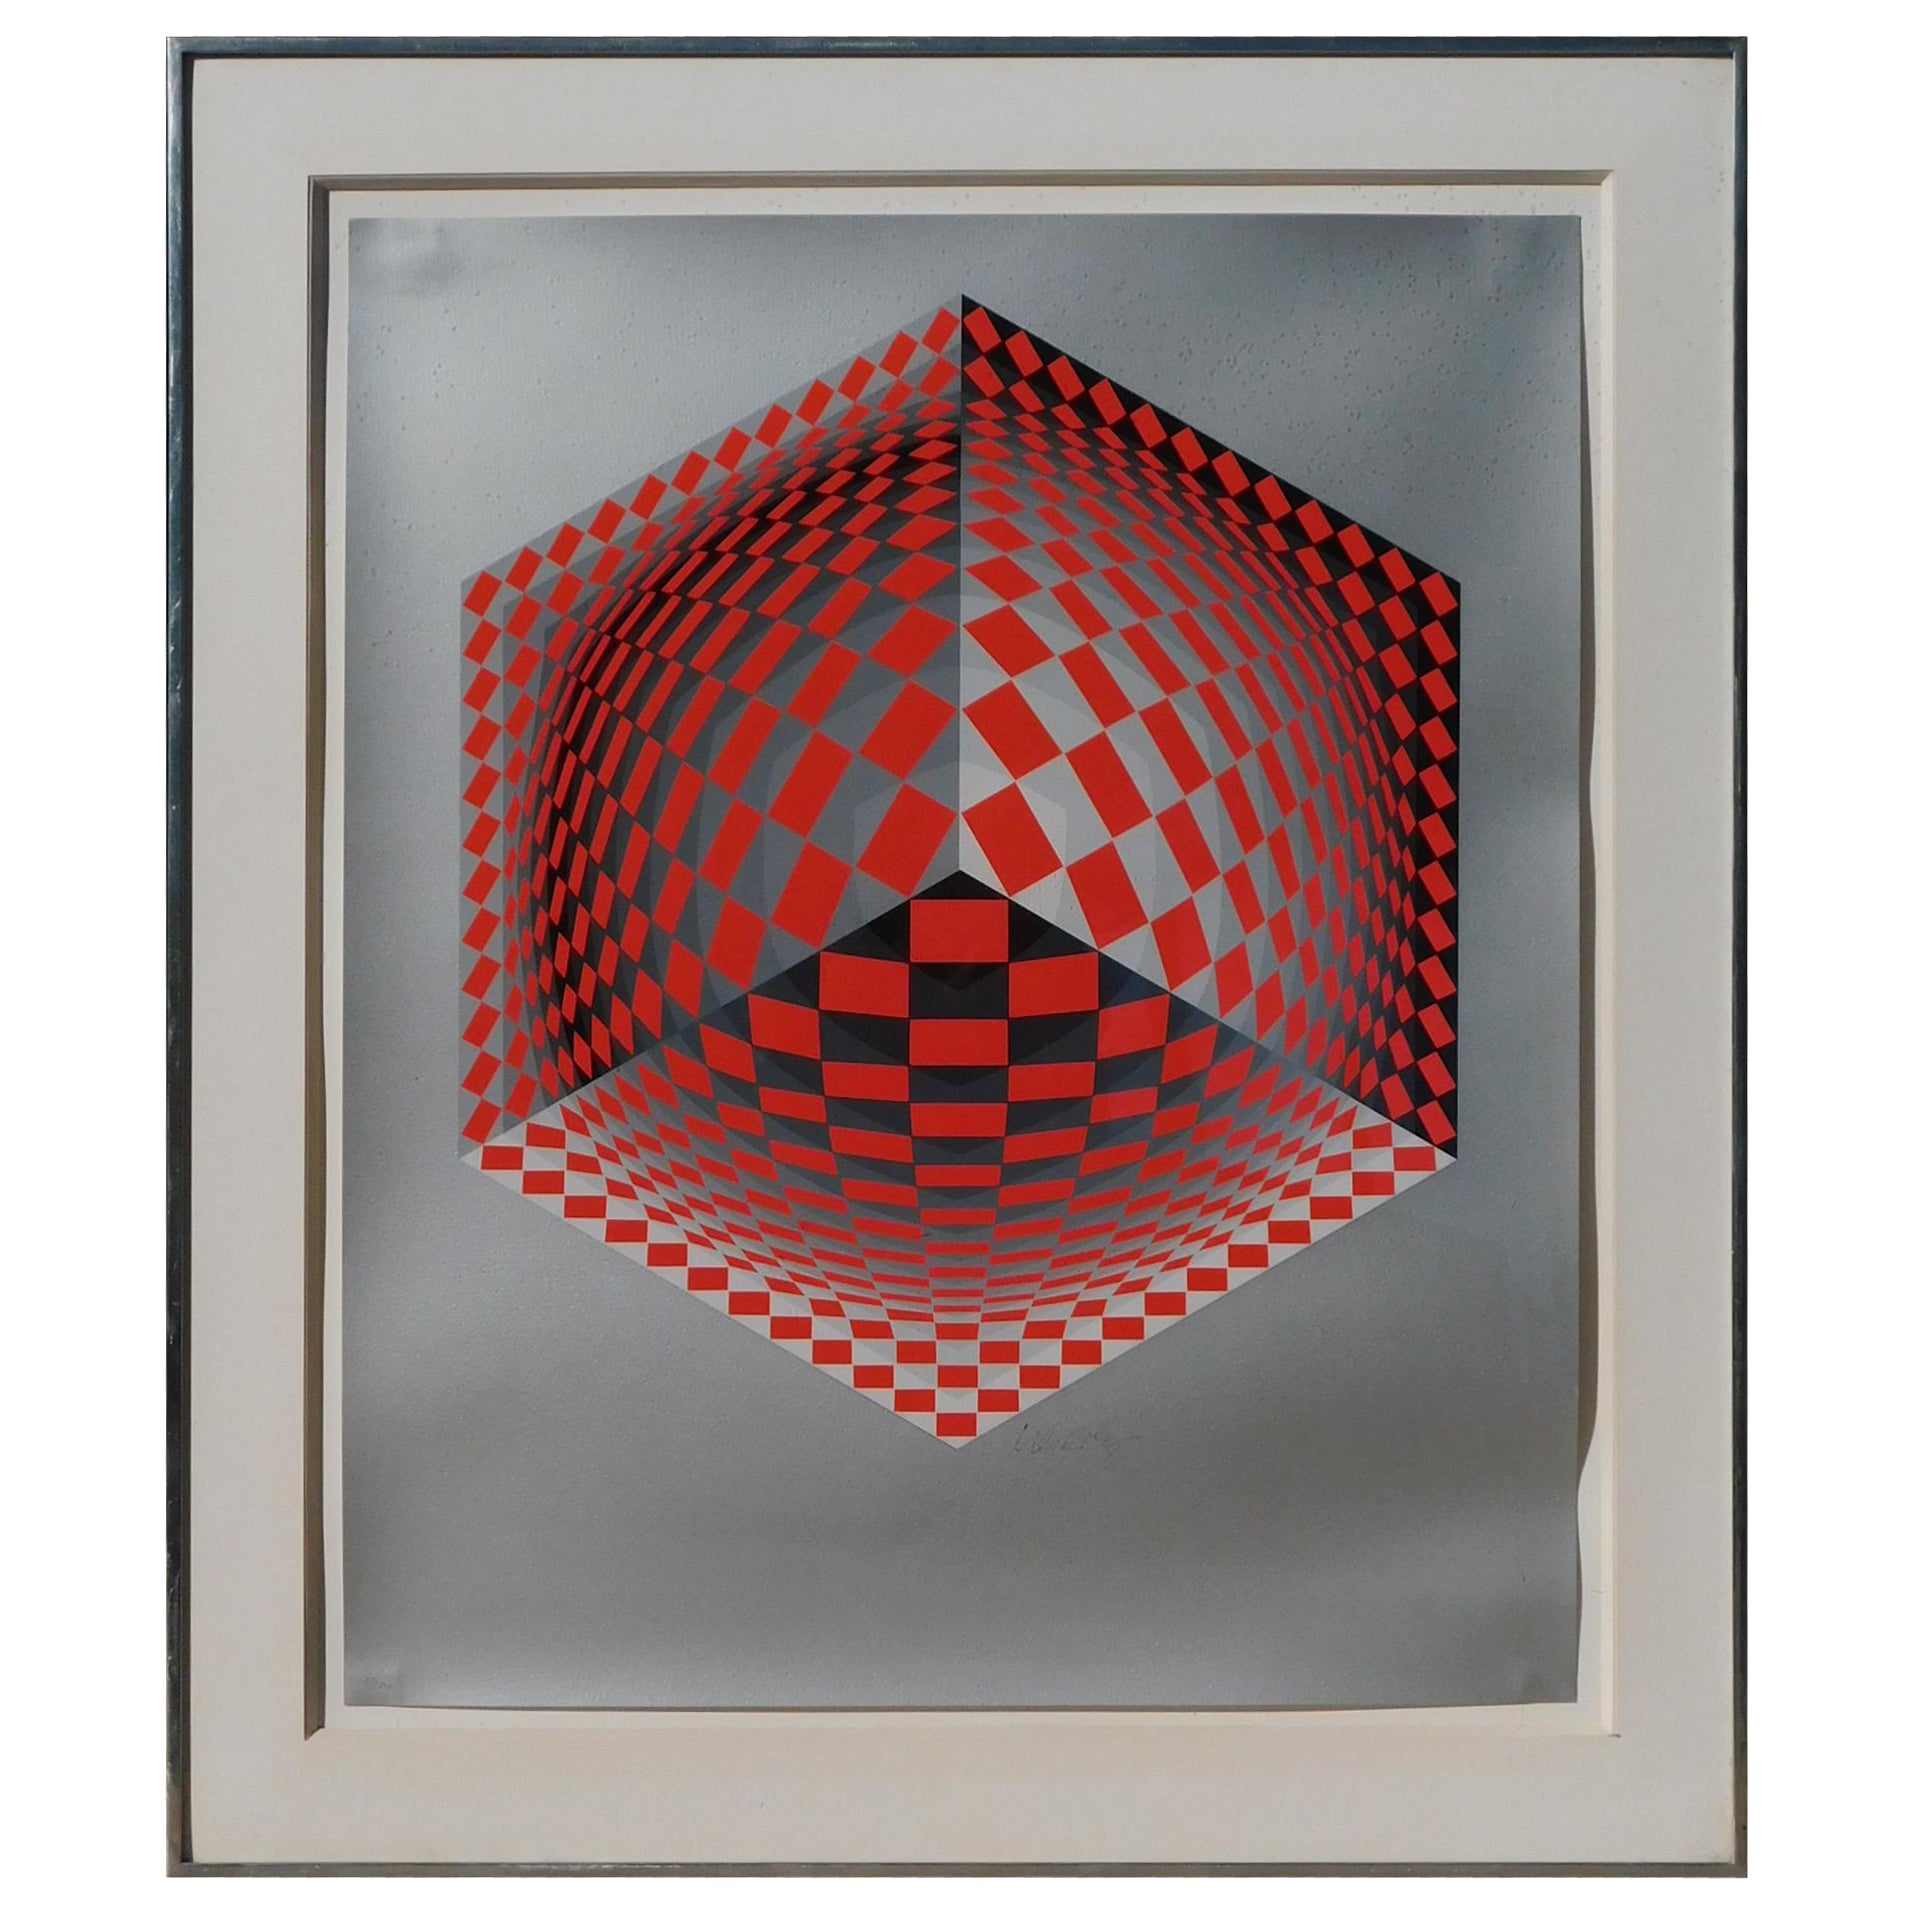 Victor Vasarely Silkscreen, 1981, "Mertan" from the Hommage à l'Hexagone Series